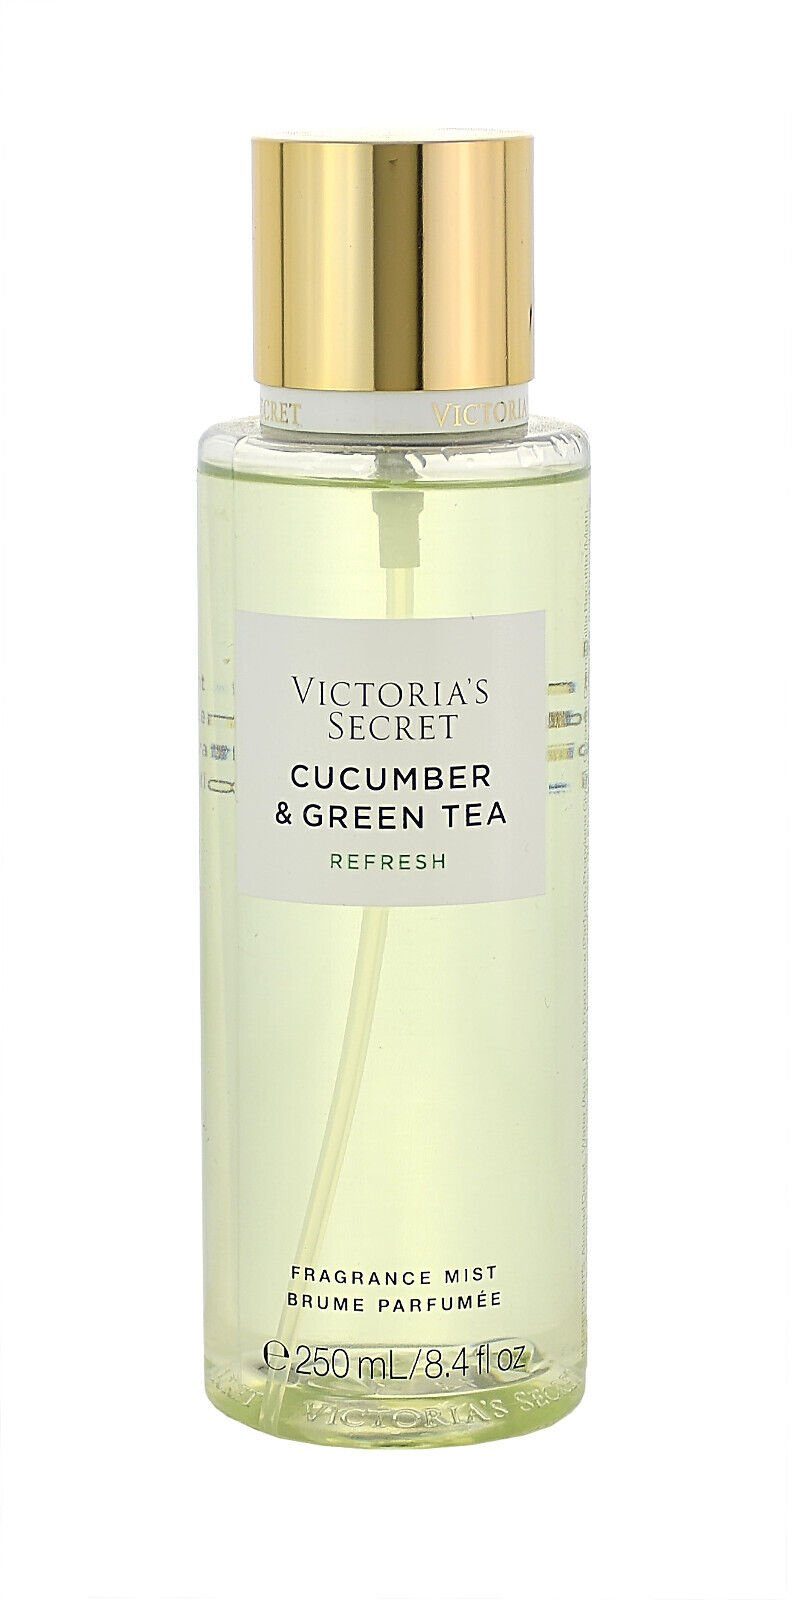 Victorias Secret Cucumber Fragrance Mist Tea Körperpflegeduft Refresh 250ml & Secret Victoria's Green